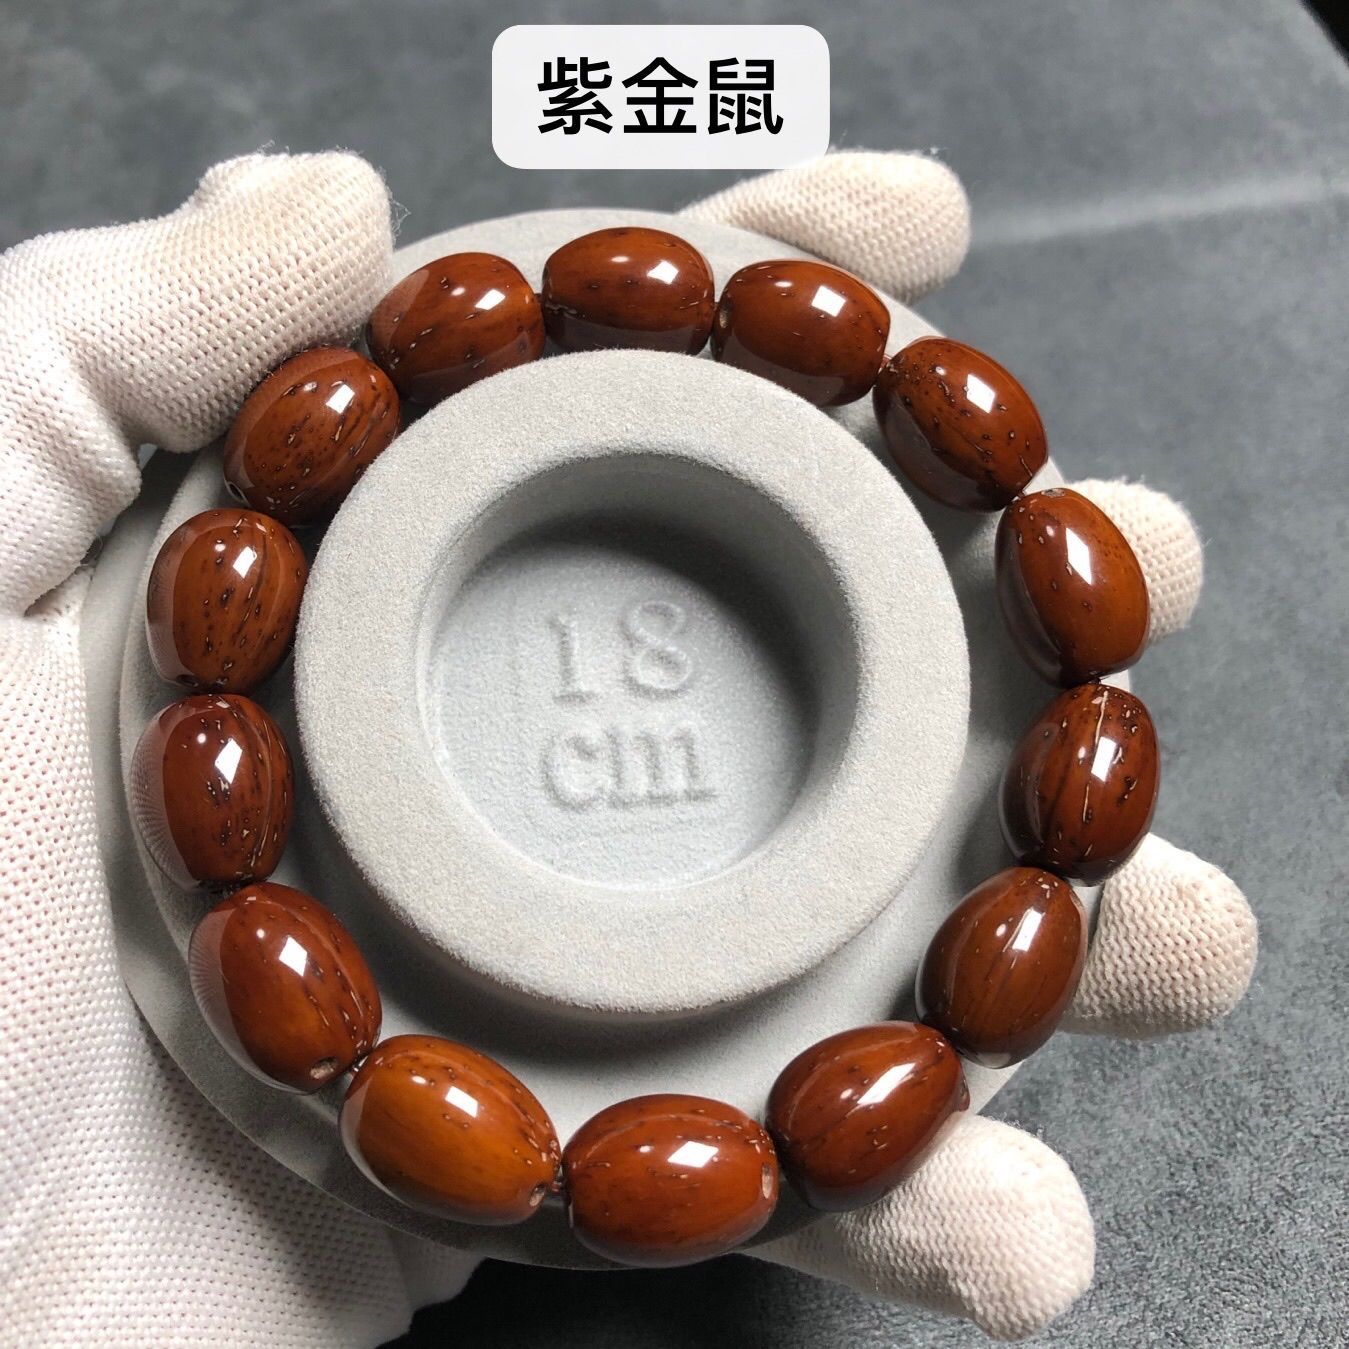 Factory Direct Sales Zi Jin Shu Jujube Old Barrel Beads Starry Black Golden Mouse Bracelet Crafts Bracelet Buddha Beads